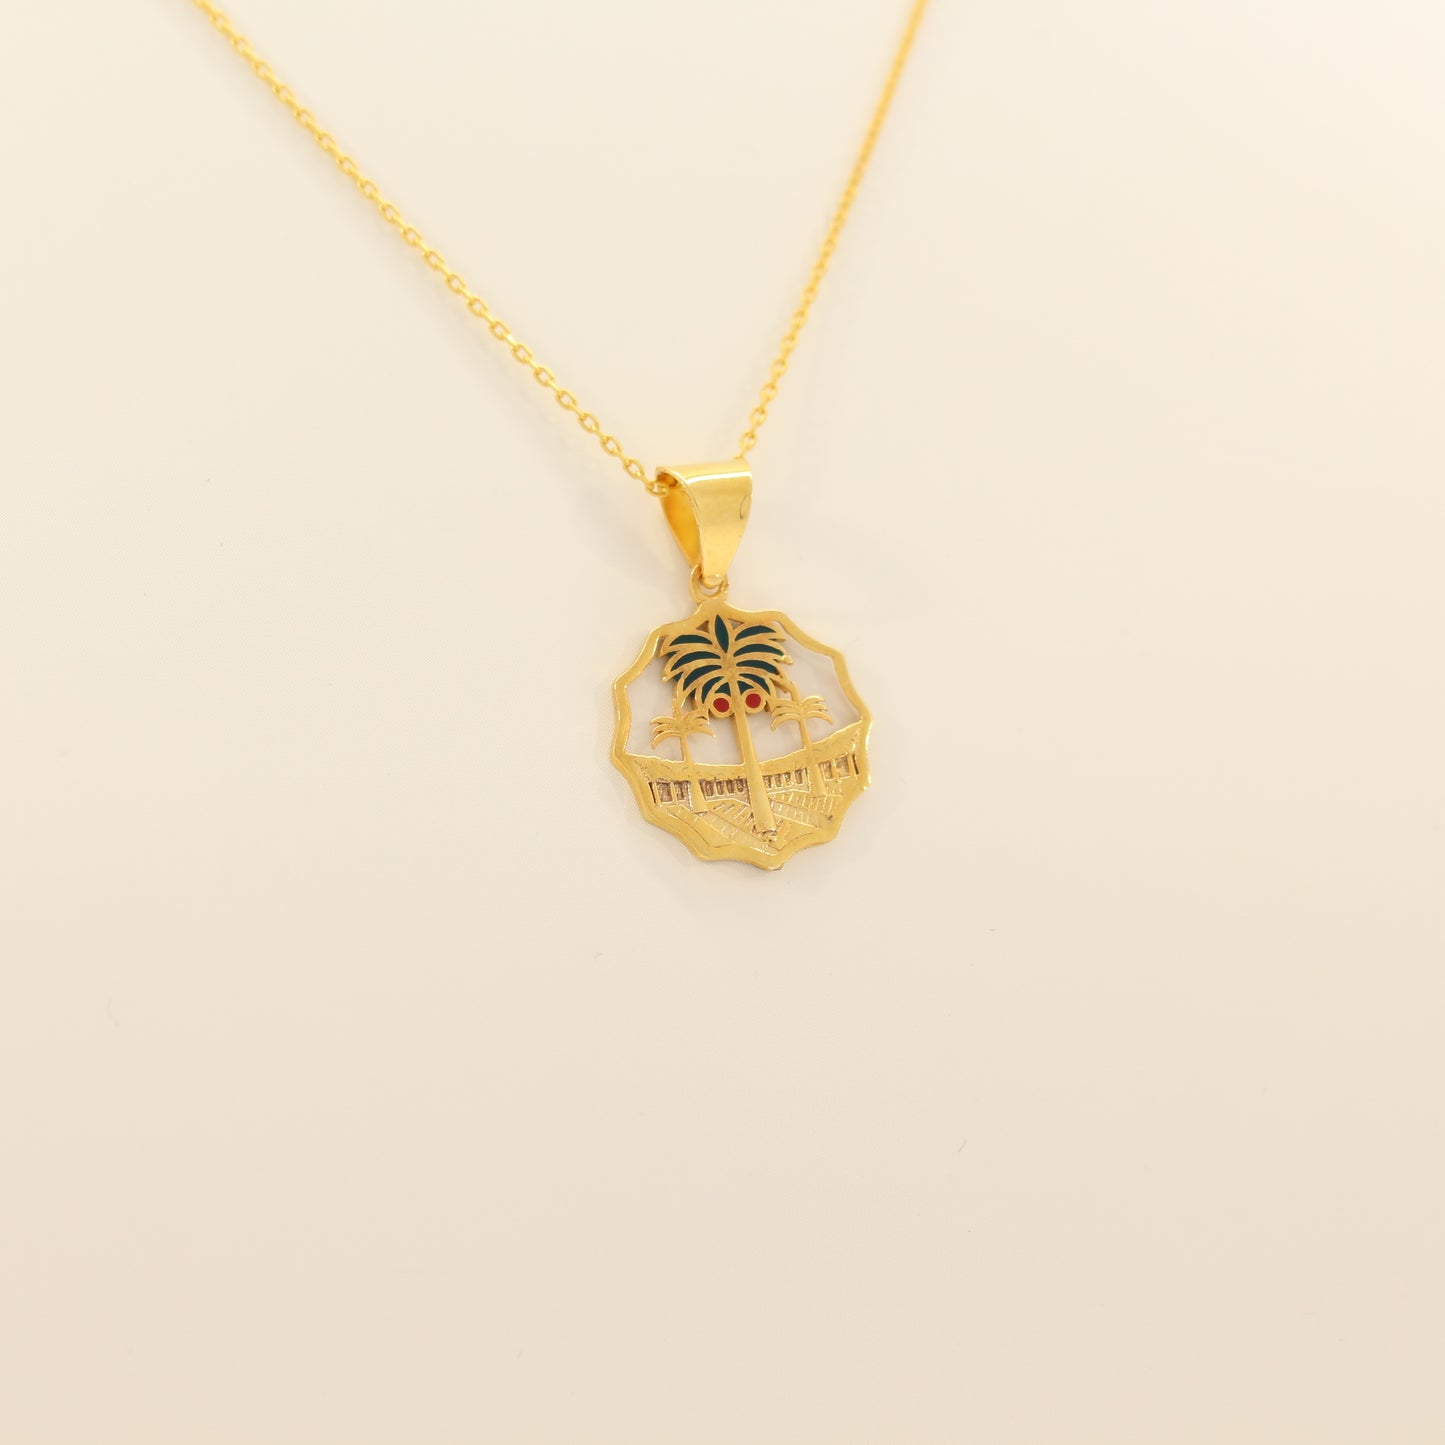 21K Gold Iraqi Dinar Necklace